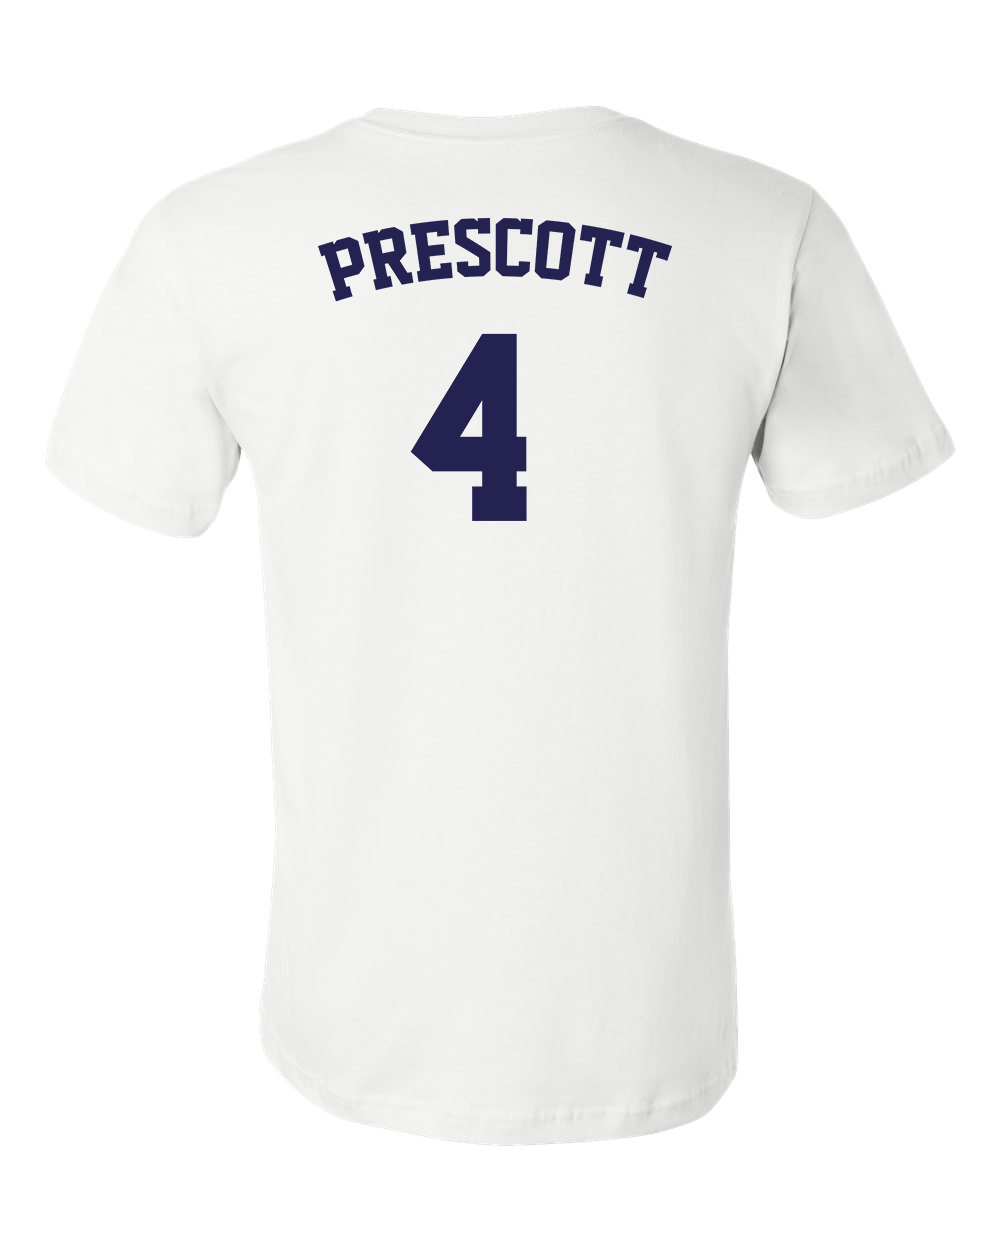 Dak Prescott Dallas Cowboys White With Est 1960 Jersey